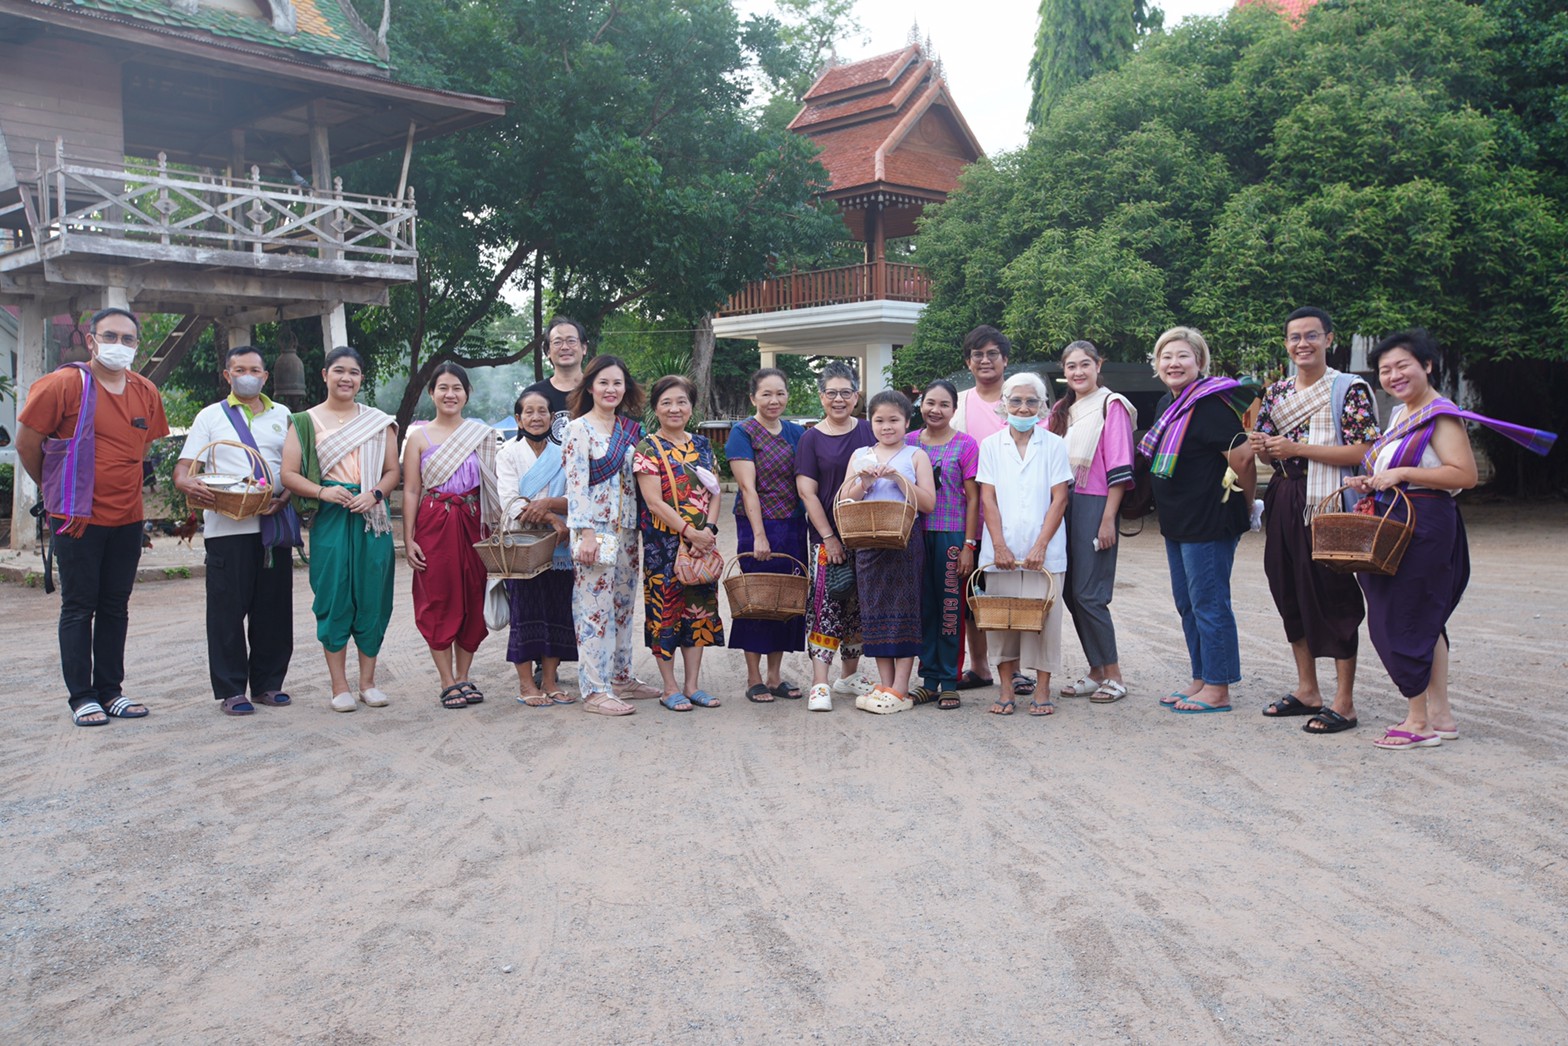 ชุมชนท่องเที่ยวเชิงวัฒนธรรมไทยเบิ้ง บ้านโคกสลุงจับมือภาคราชการ เอกชน และผู้ประกอบการธุรกิจการท่องเที่ยวจัดกิจกรรมทดลองออกแบบแผนการท่องเที่ยวในชุมชนหวังยกระดับและส่งเสริมการท่องเที่ยววิถีชุมชนอย่างยั่งยืน 